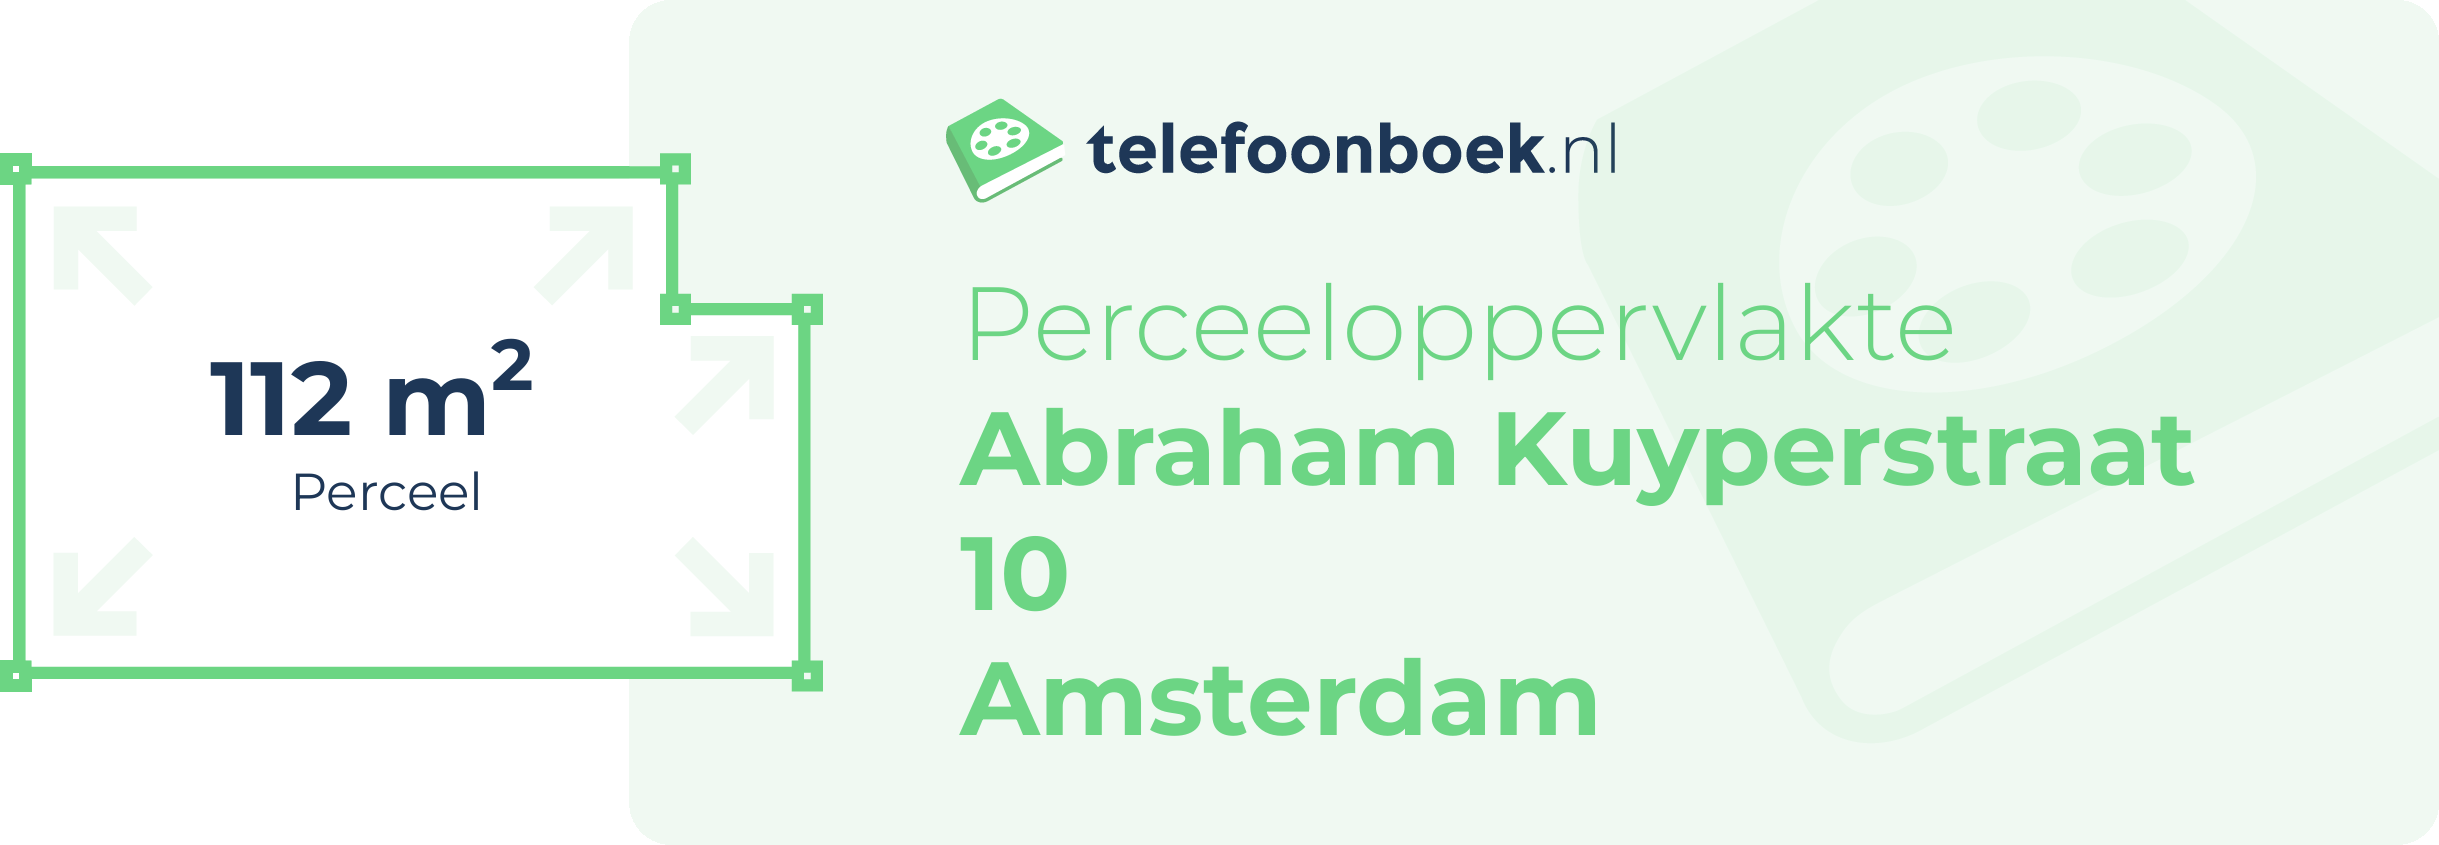 Perceeloppervlakte Abraham Kuyperstraat 10 Amsterdam